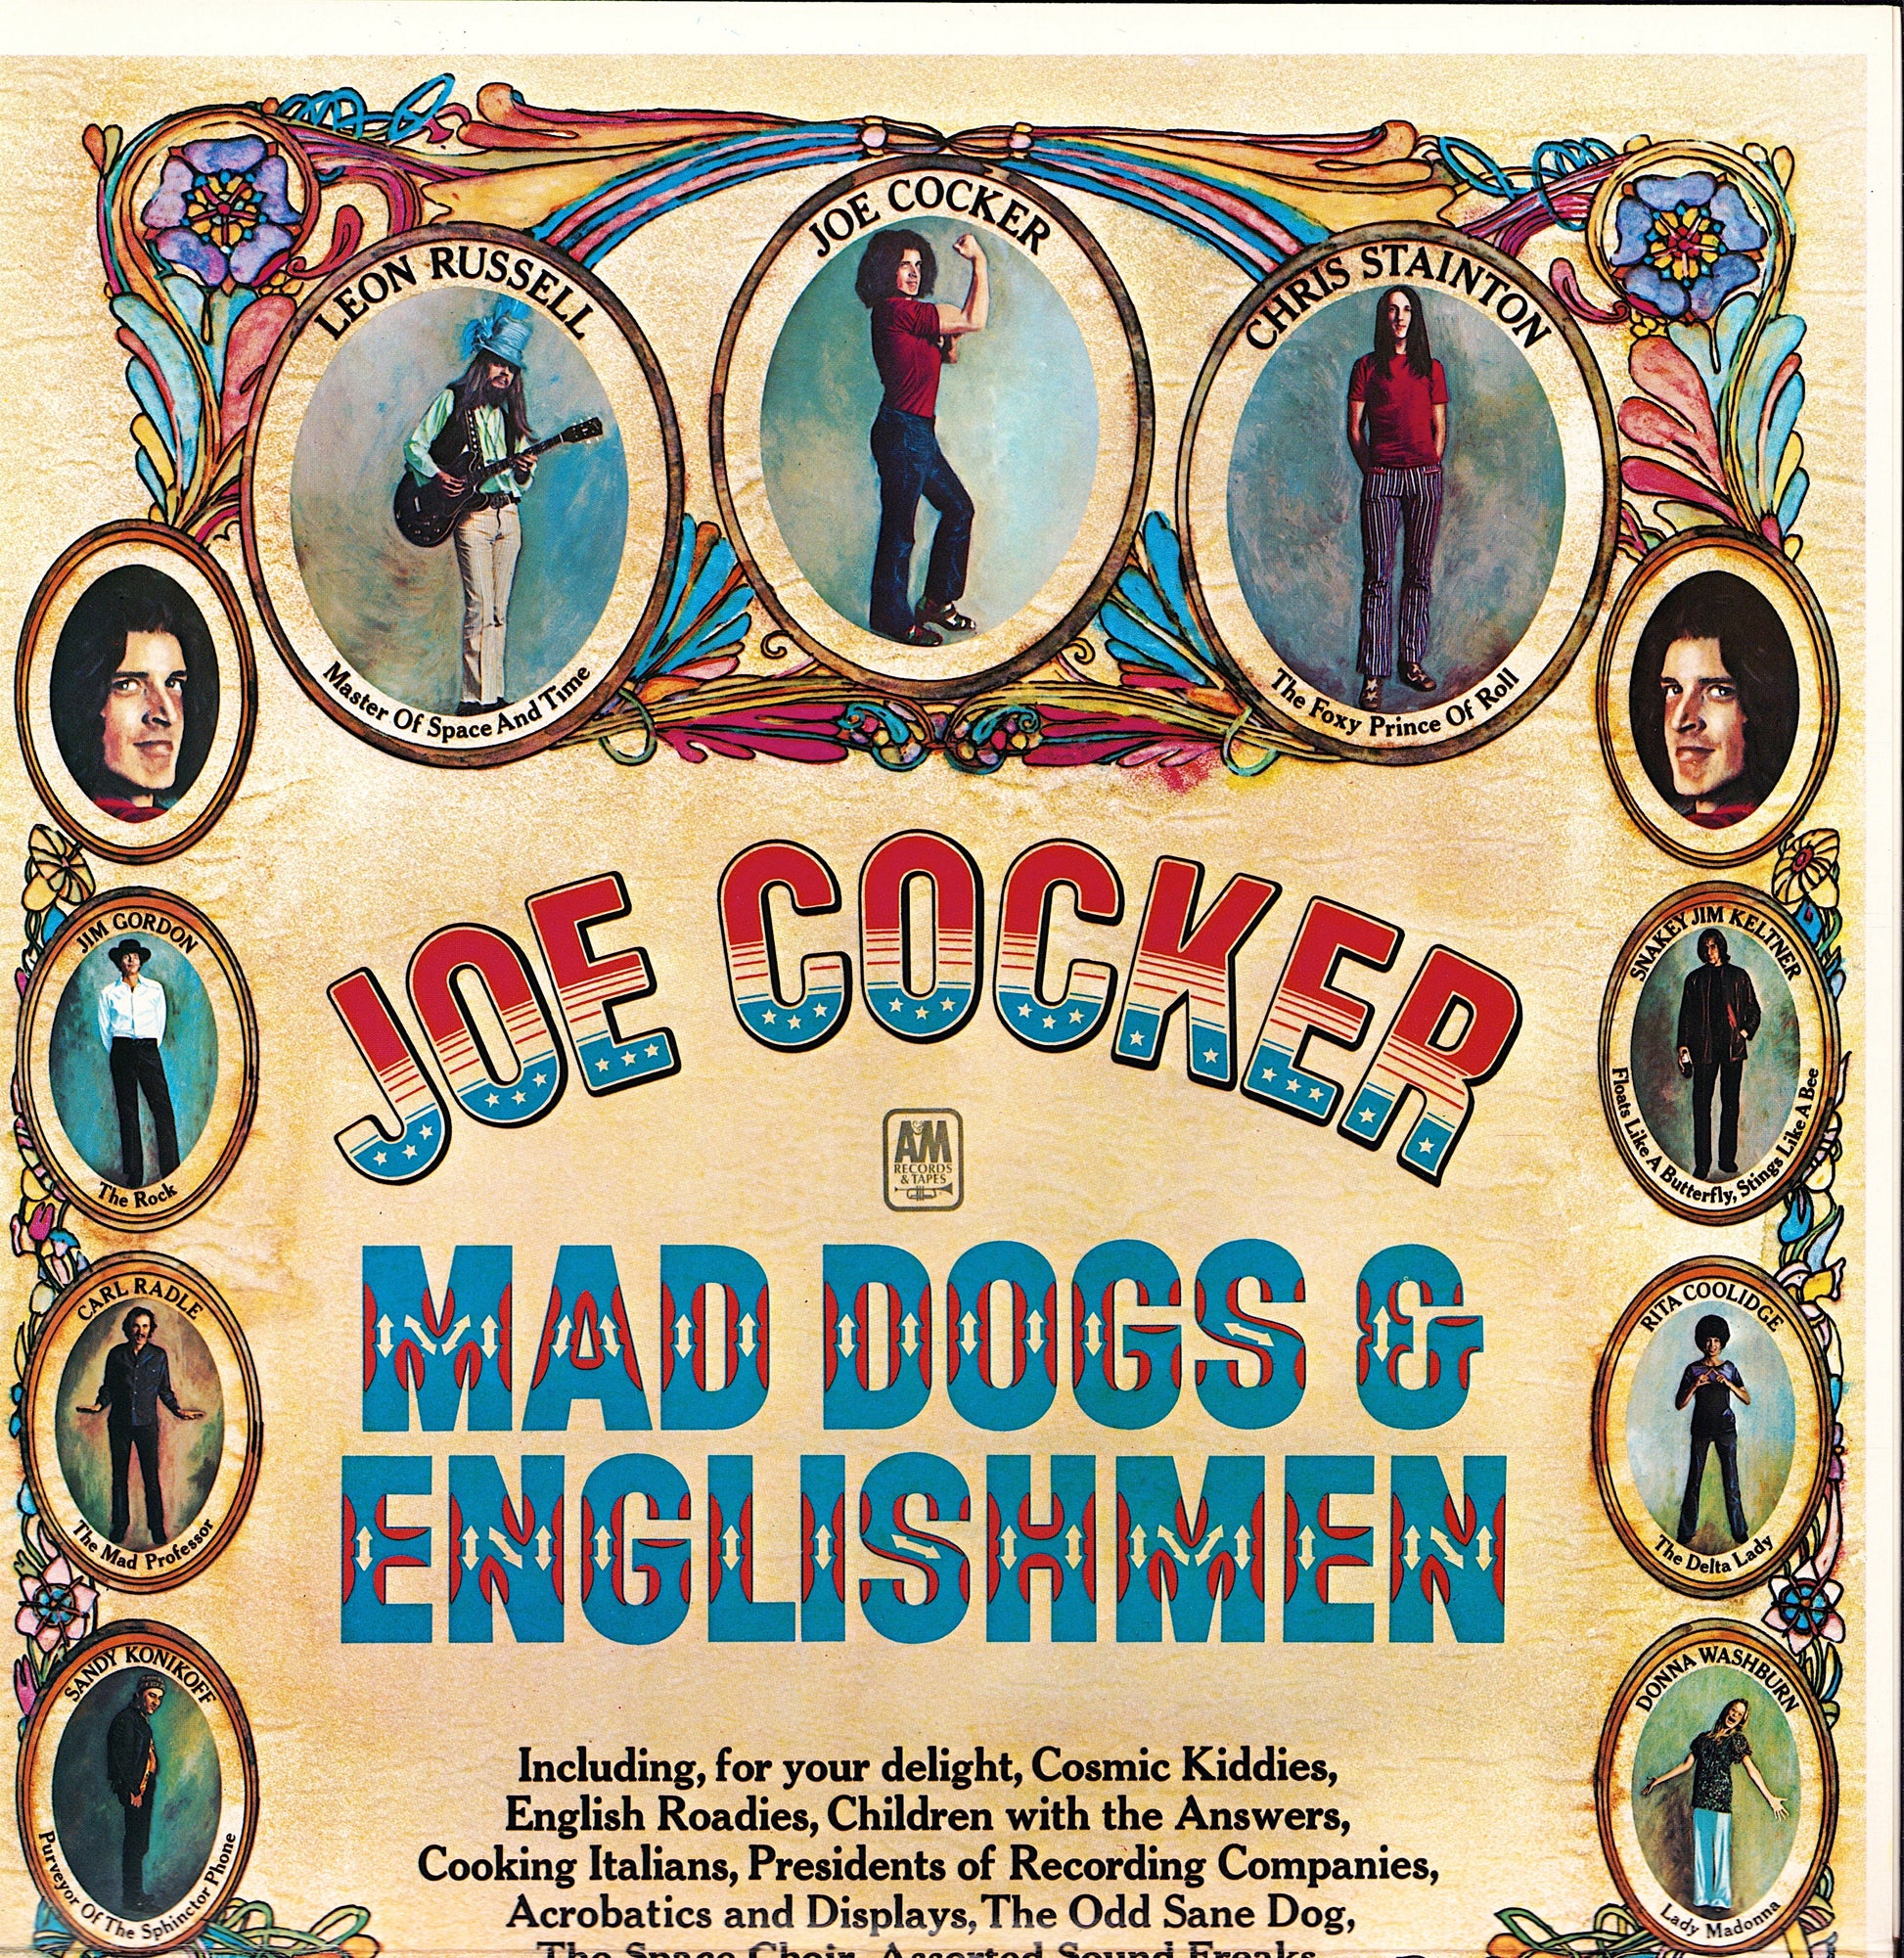 Joe Cocker ‎- Mad Dogs & Englishmen Vinyl 2LP